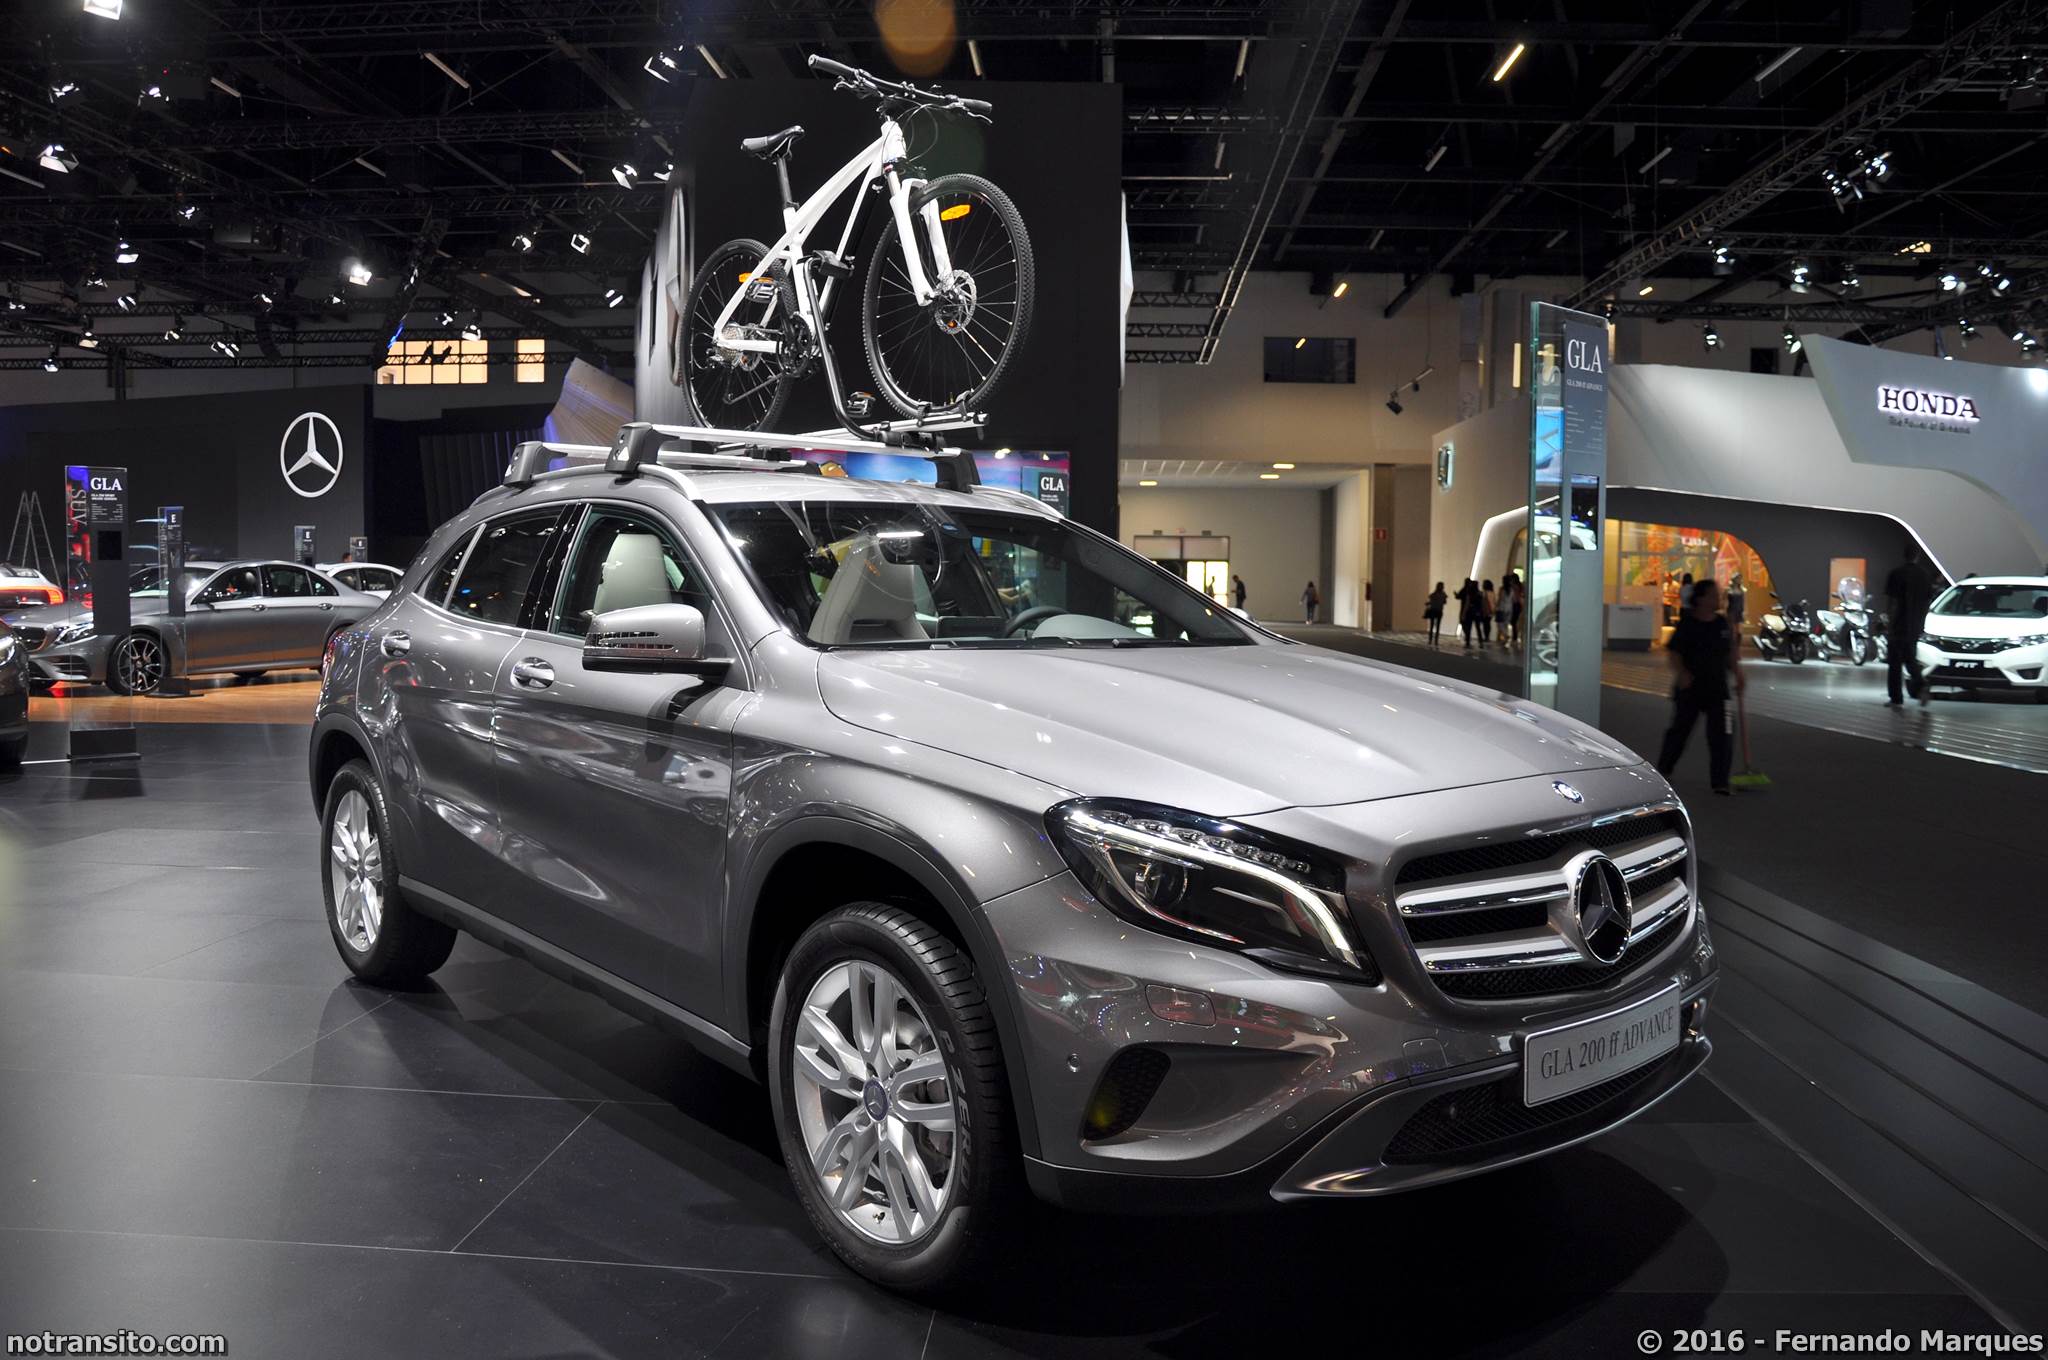 Mercedes-Benz GLA 200 ff Advance Salão do Automóvel 2016